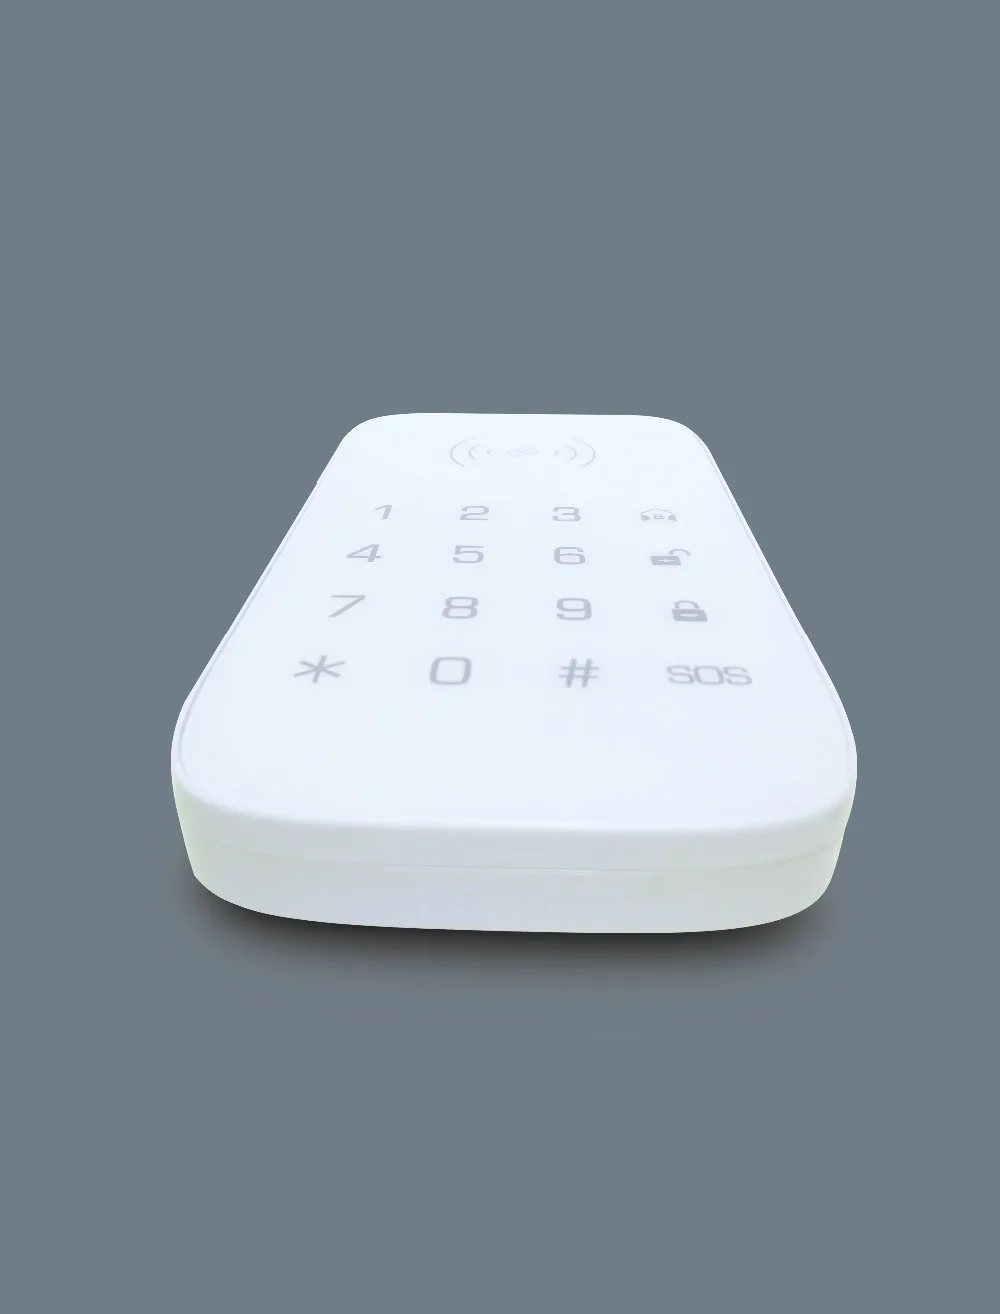 Yobang Безопасности Беспроводной RFID клавиатуры безопасности близость двери вход контроль доступа сигнализации системы+ 2 RFID метки для Wi-Fi GSM сигнализация